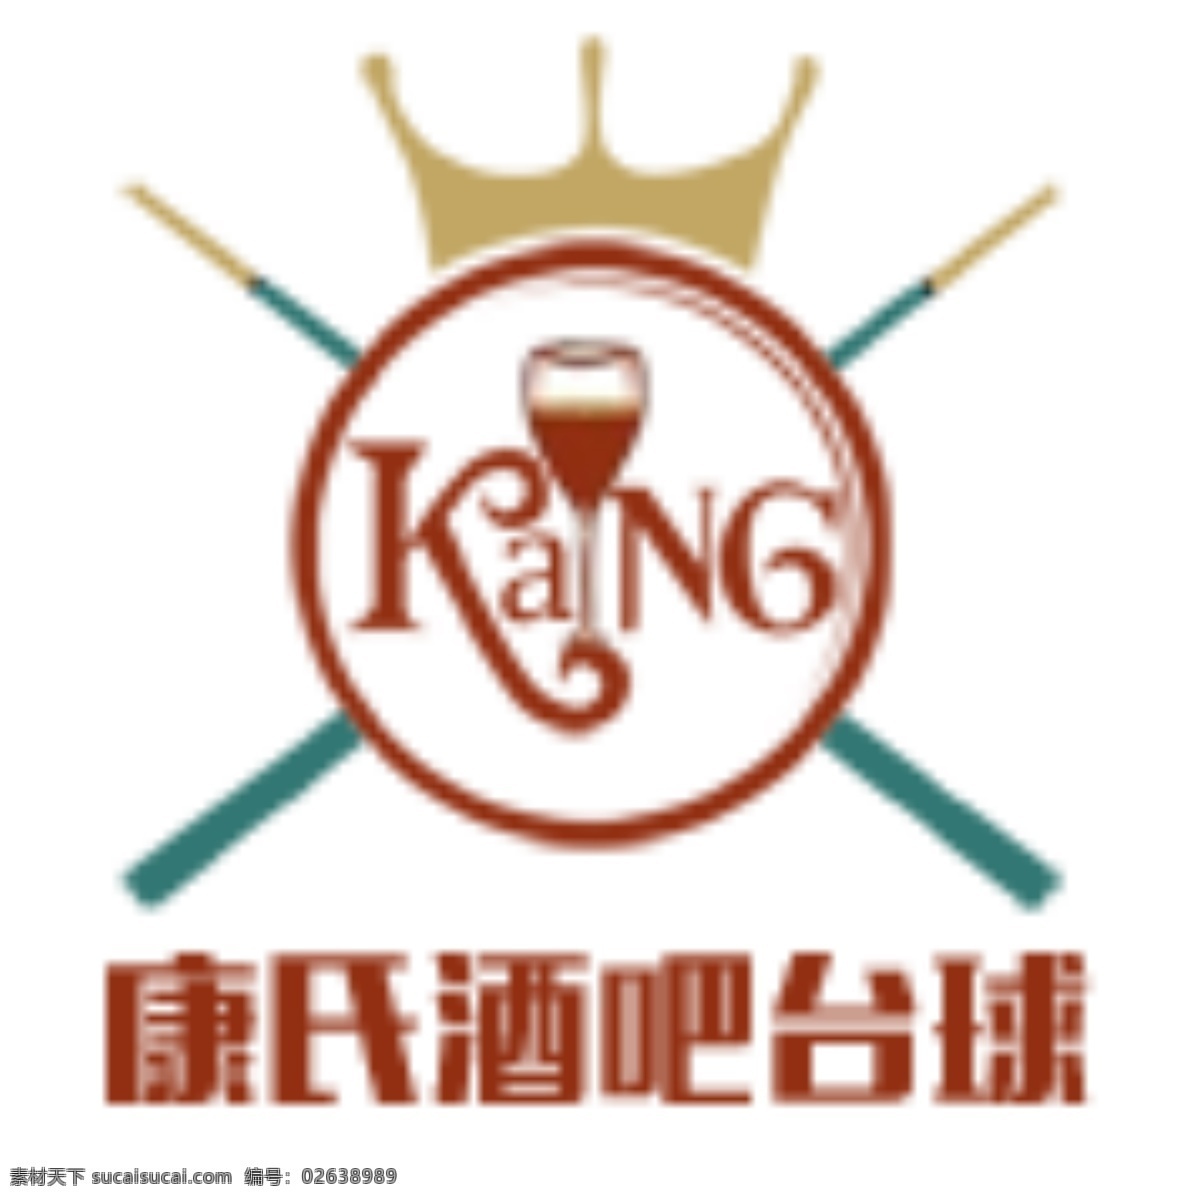 康氏酒吧台球 康氏 酒吧 台球 logo app图标 白色